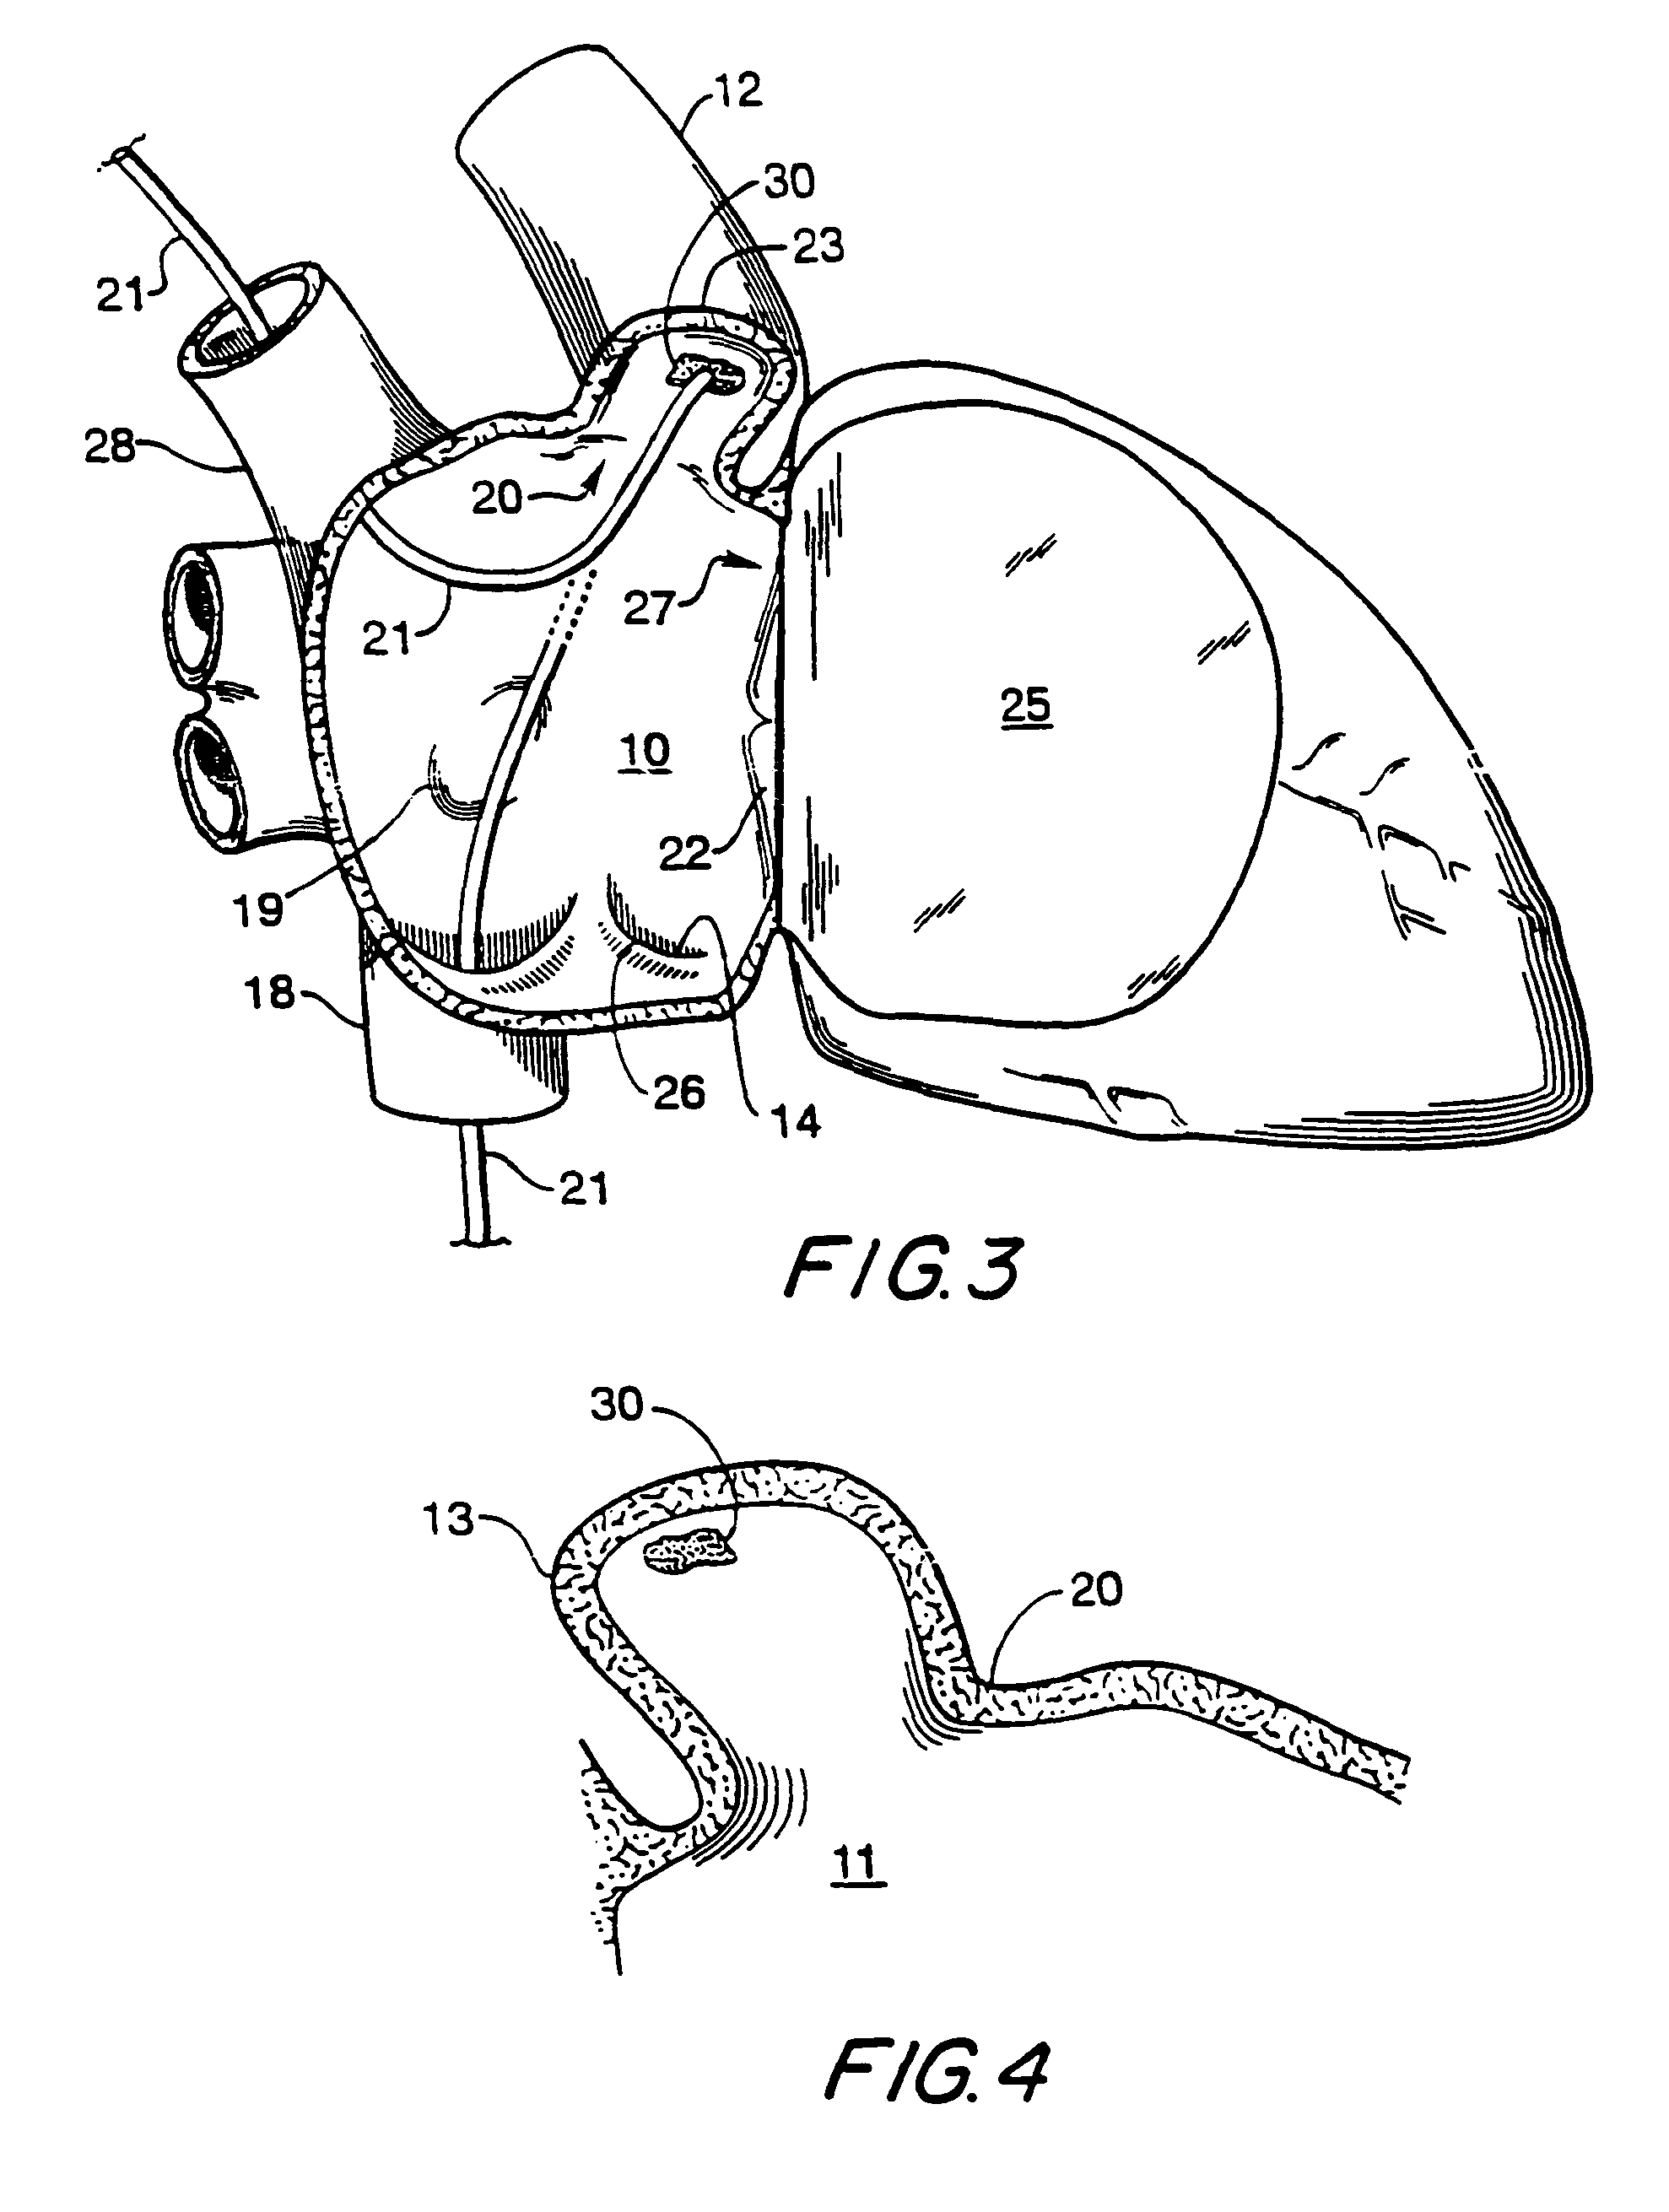 Filter apparatus for ostium of left atrial appendage